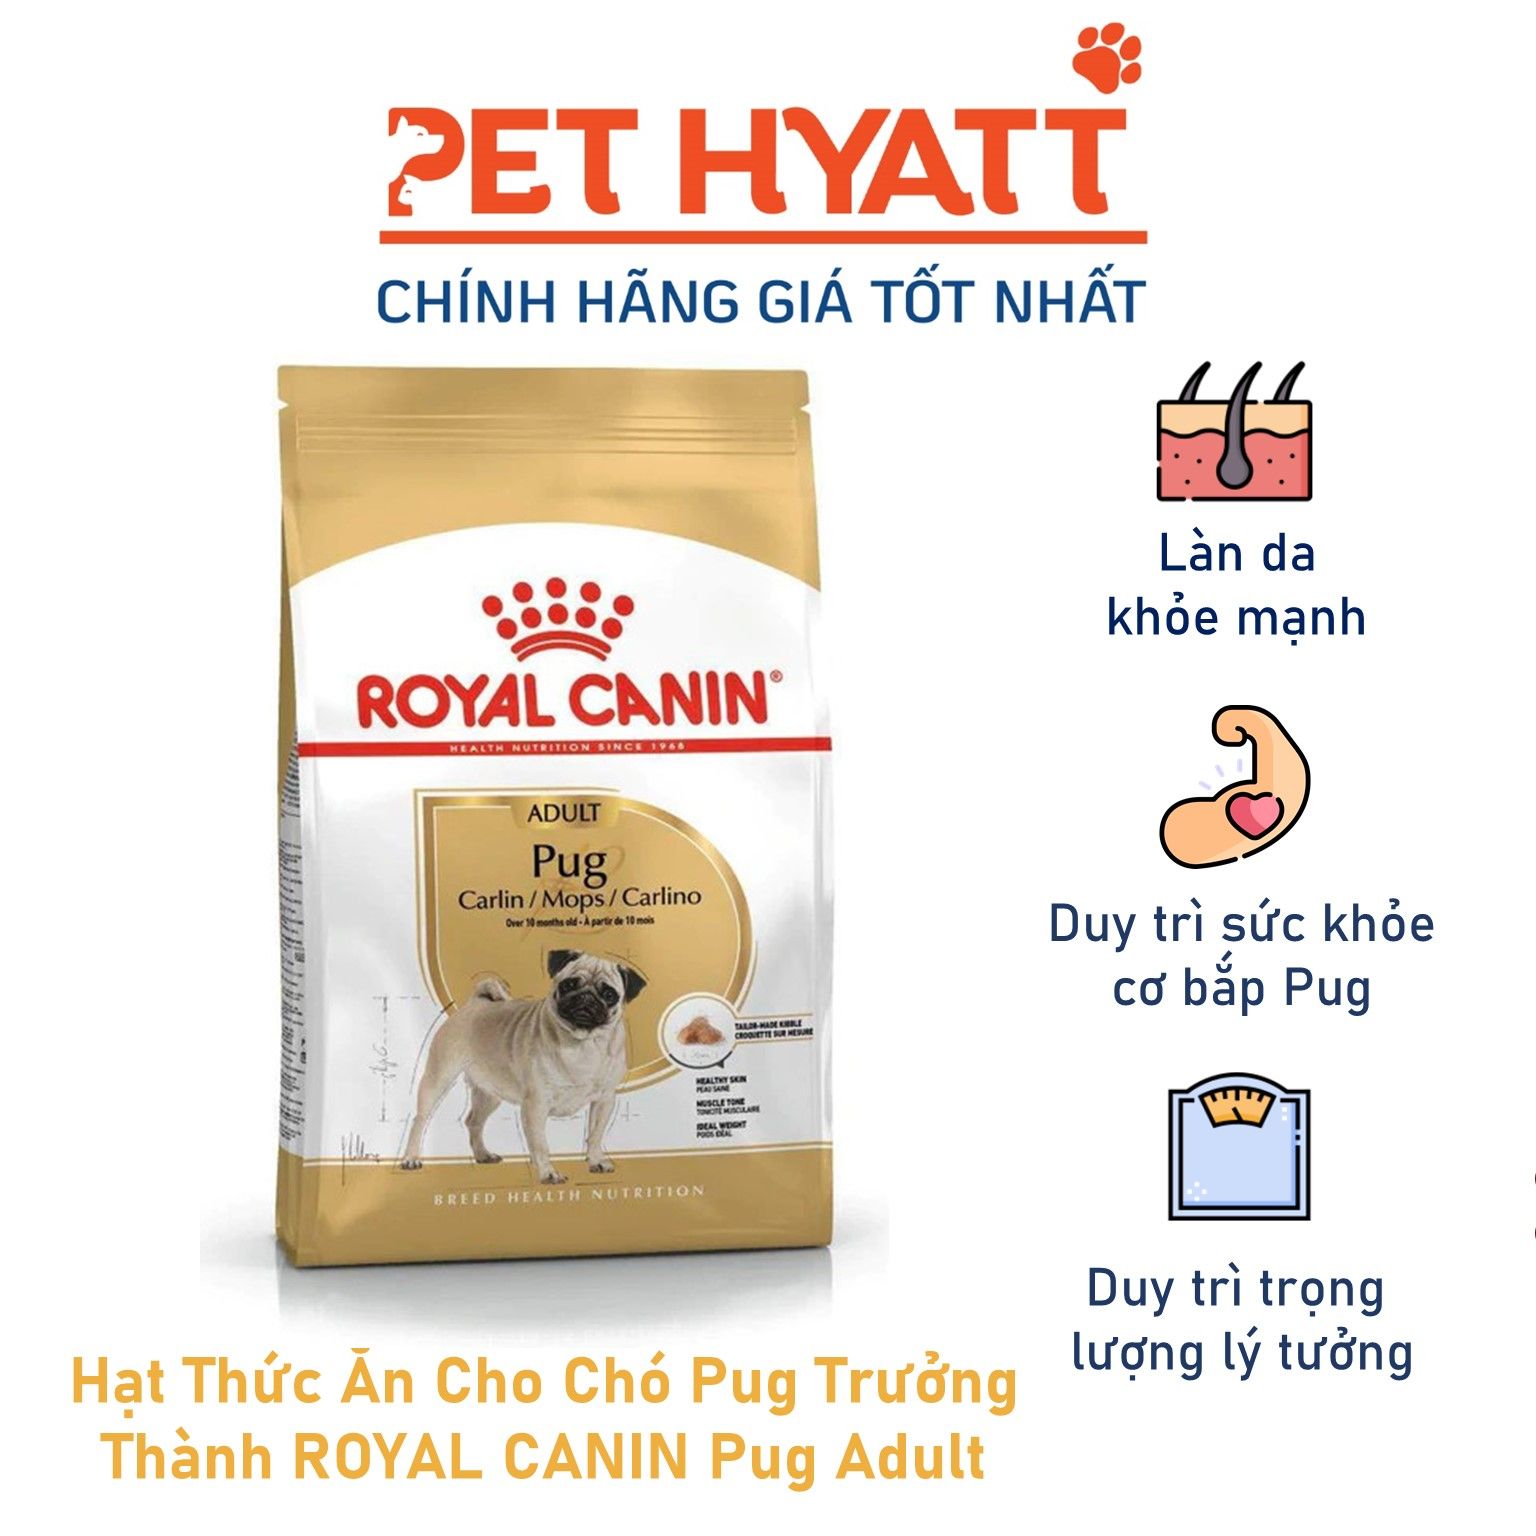 Hạt Thức Ăn Cho Chó Pug Trưởng Thành ROYAL CANIN Pug Adult